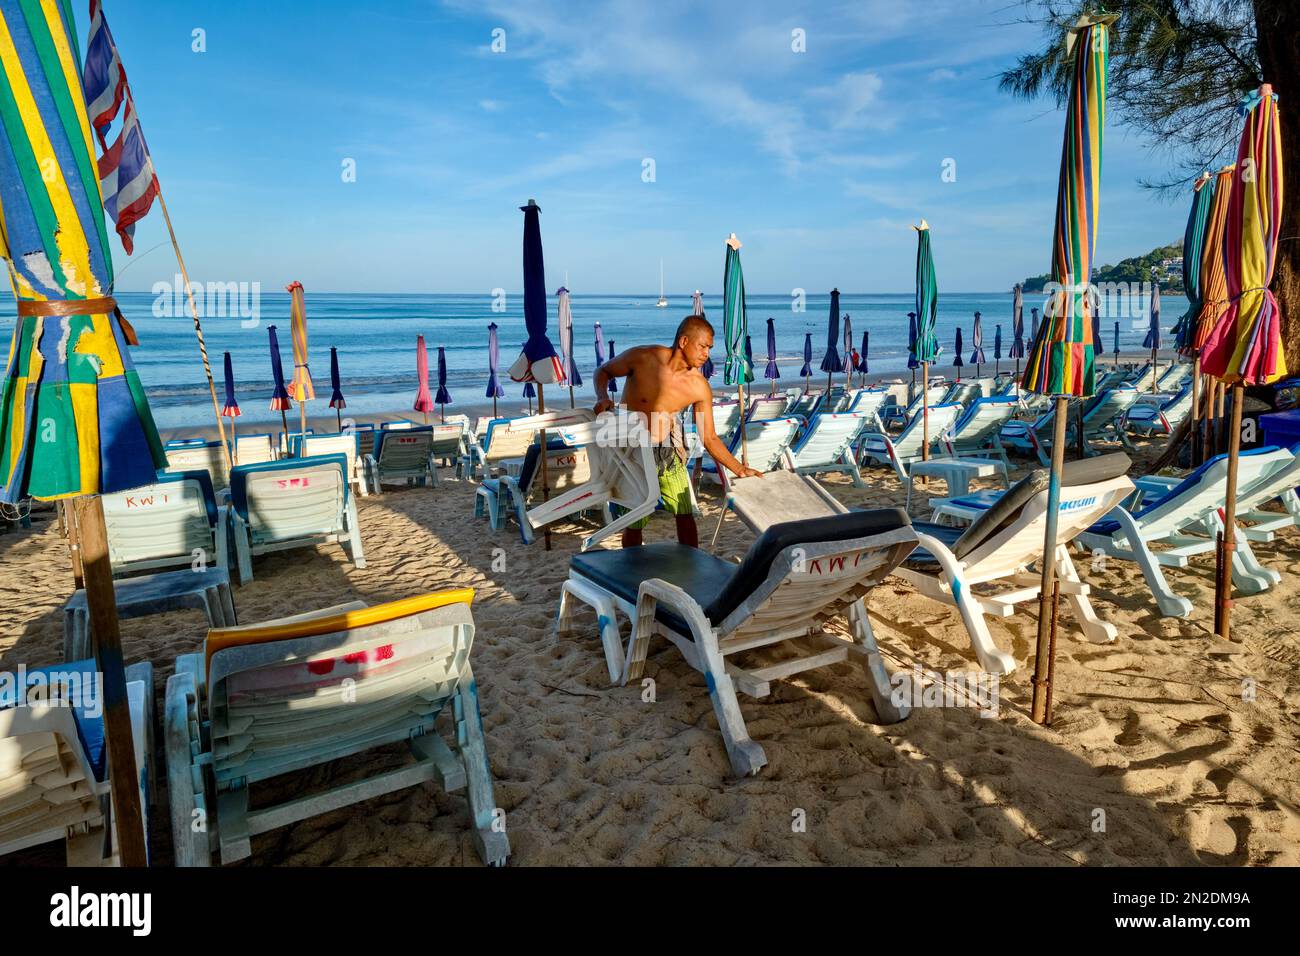 Tôt le matin à Kamala Beach, Phuket, Thaïlande, un homme prépare des chaises longues et des parasols de plage pour les clients attendus Banque D'Images